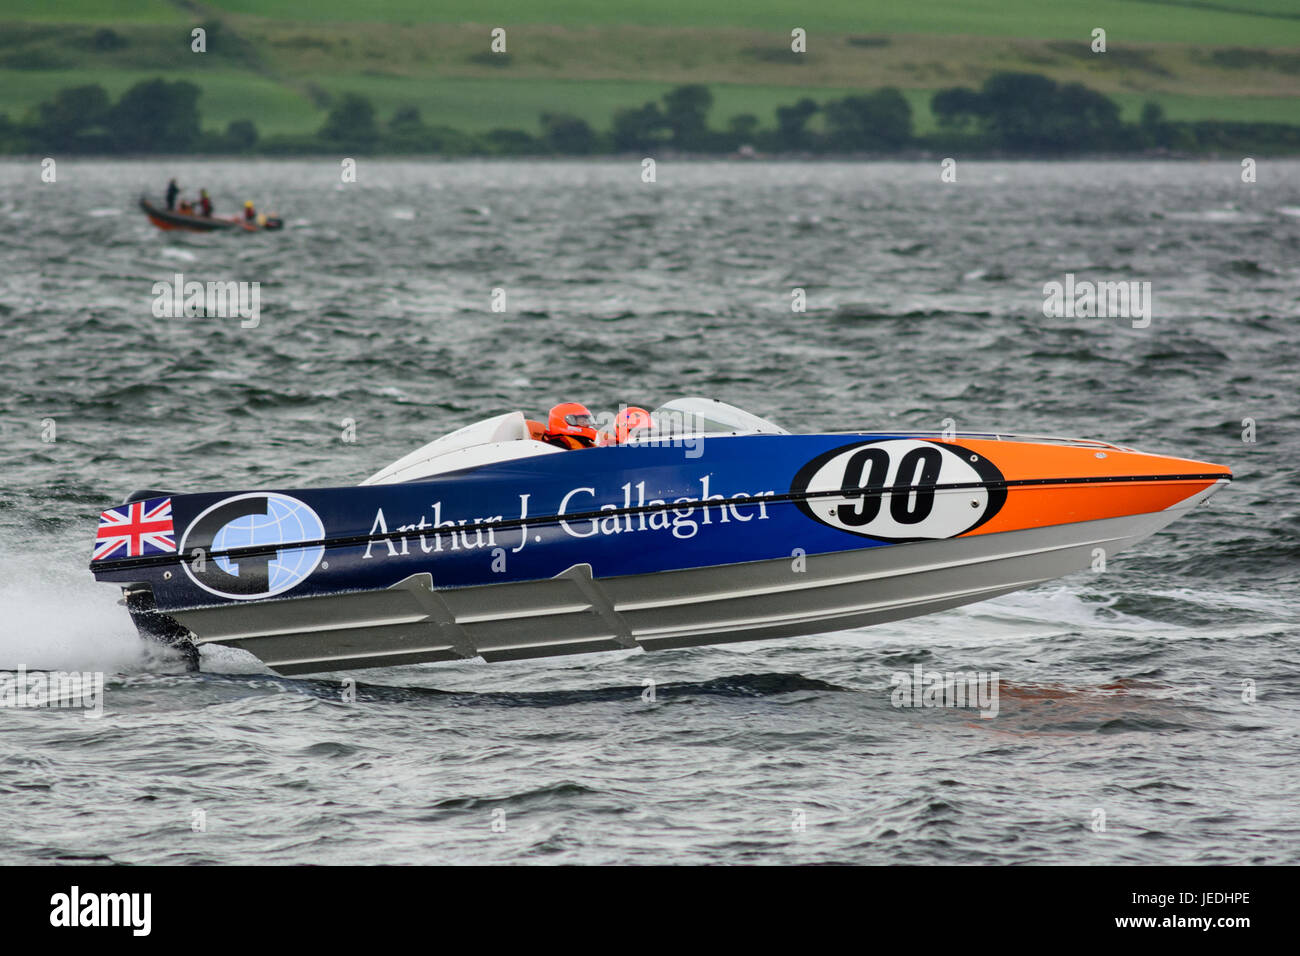 P1 Superstock powerboat" Racing de la Explanada, Greenock, Escocia, el 24 de junio de 2017. Barco 90, Arthur J. Gallagher, impulsada por Dave Taft y navegó por Andy primos. Foto de stock